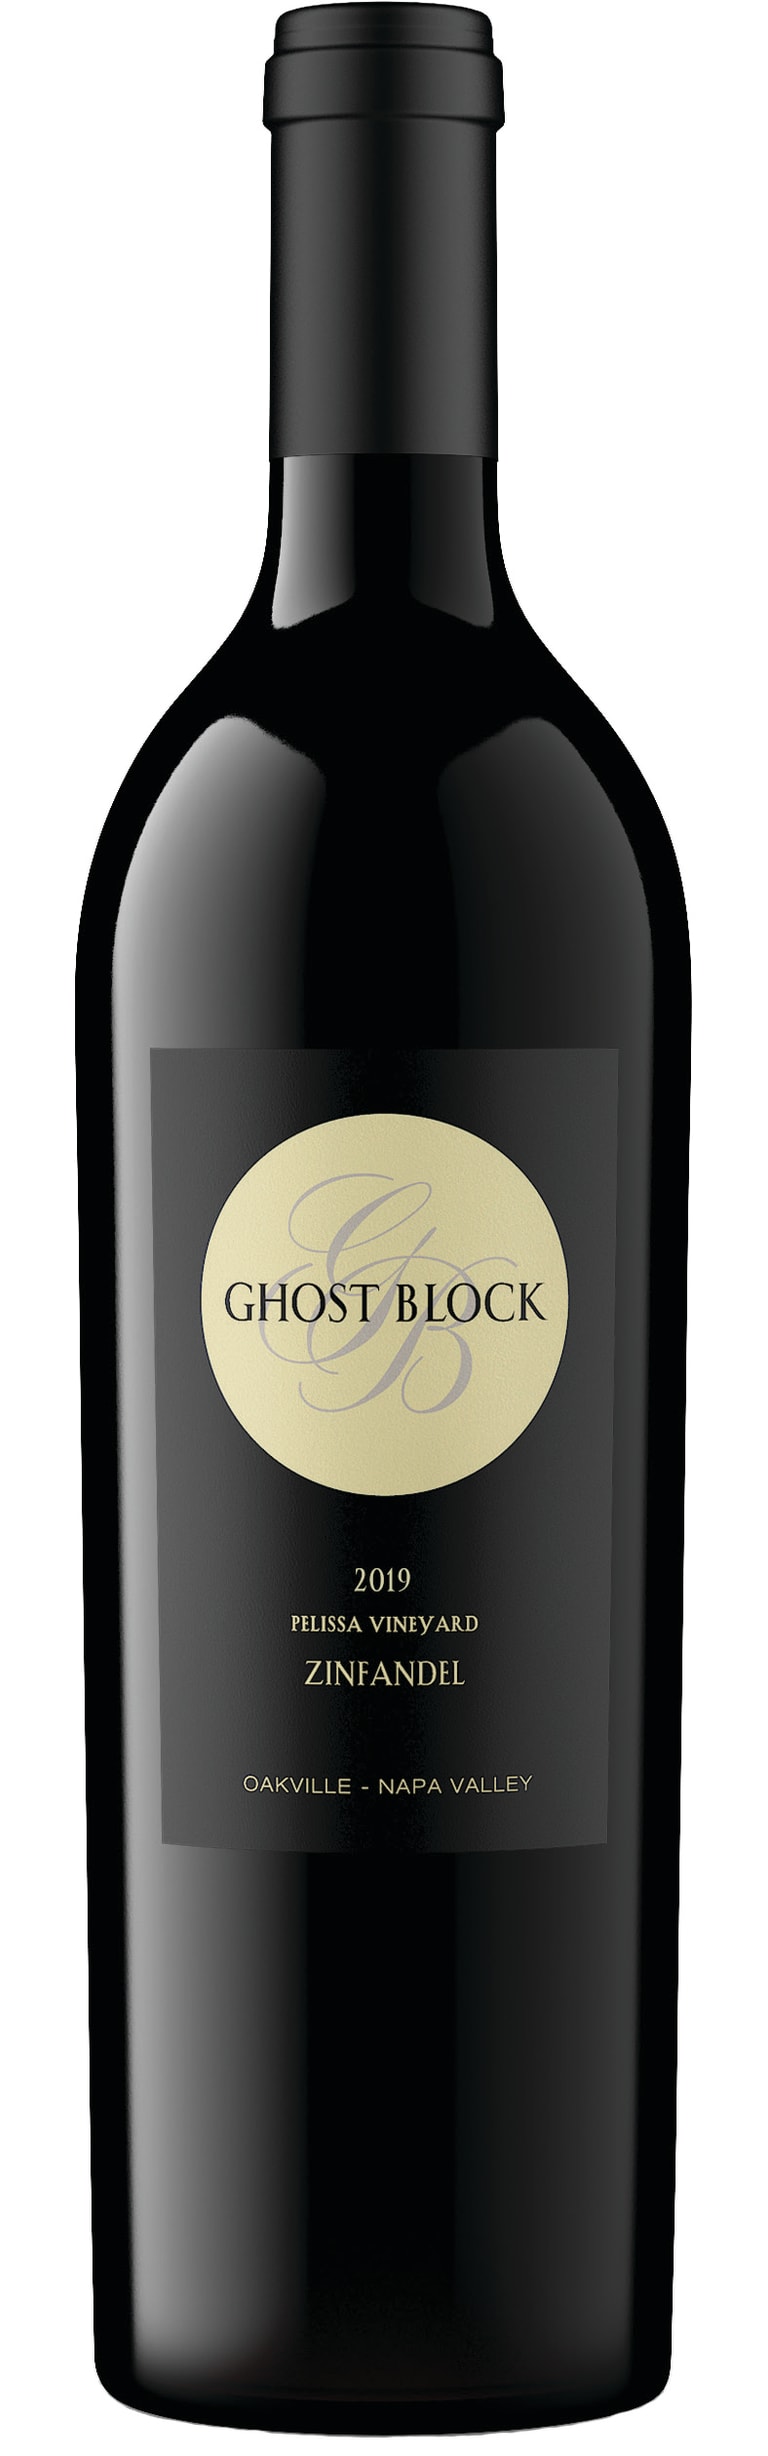 Ghost Block Zinfandel Pelissa Vineyard 2019